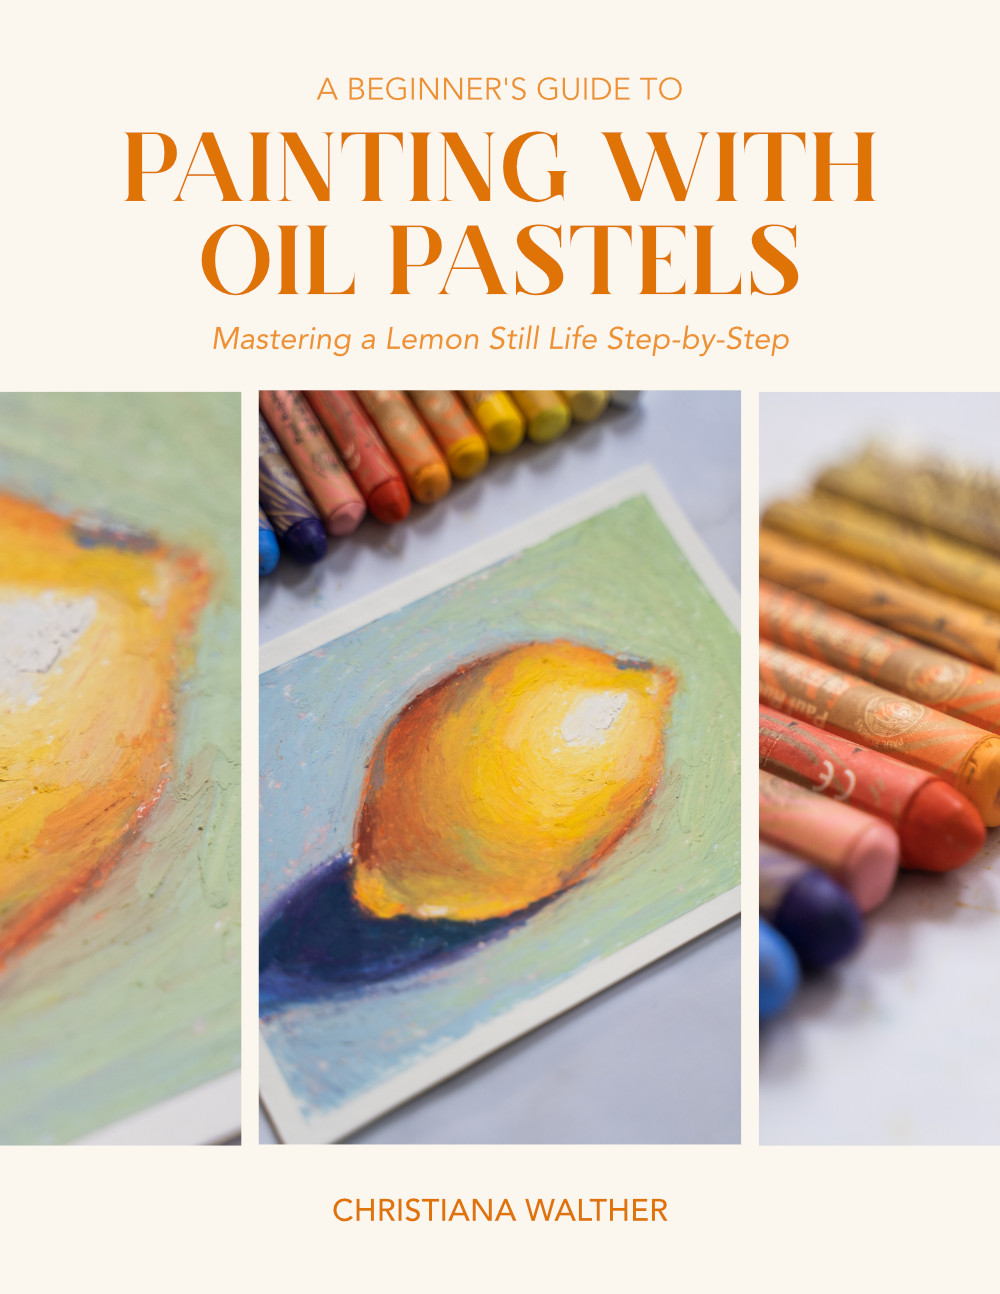 Still Life Techniques - Oil Pastels